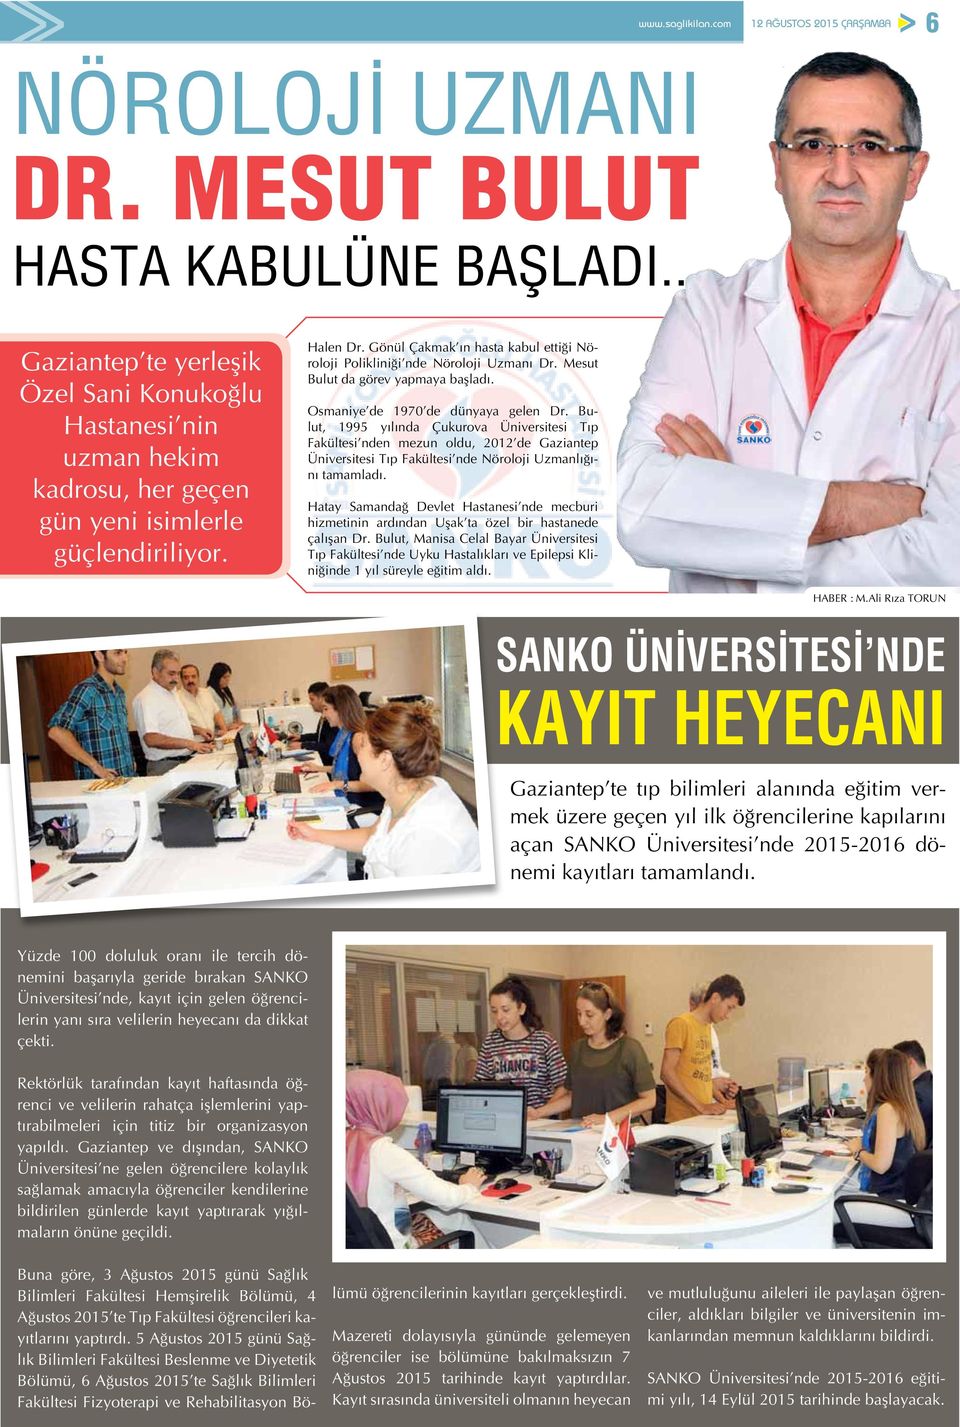 Bulut, 1995 yılında Çukurova Üniversitesi Tıp Fakültesi nden mezun oldu, 2012 de Gaziantep Üniversitesi Tıp Fakültesi nde Nöroloji Uzmanlığını tamamladı.